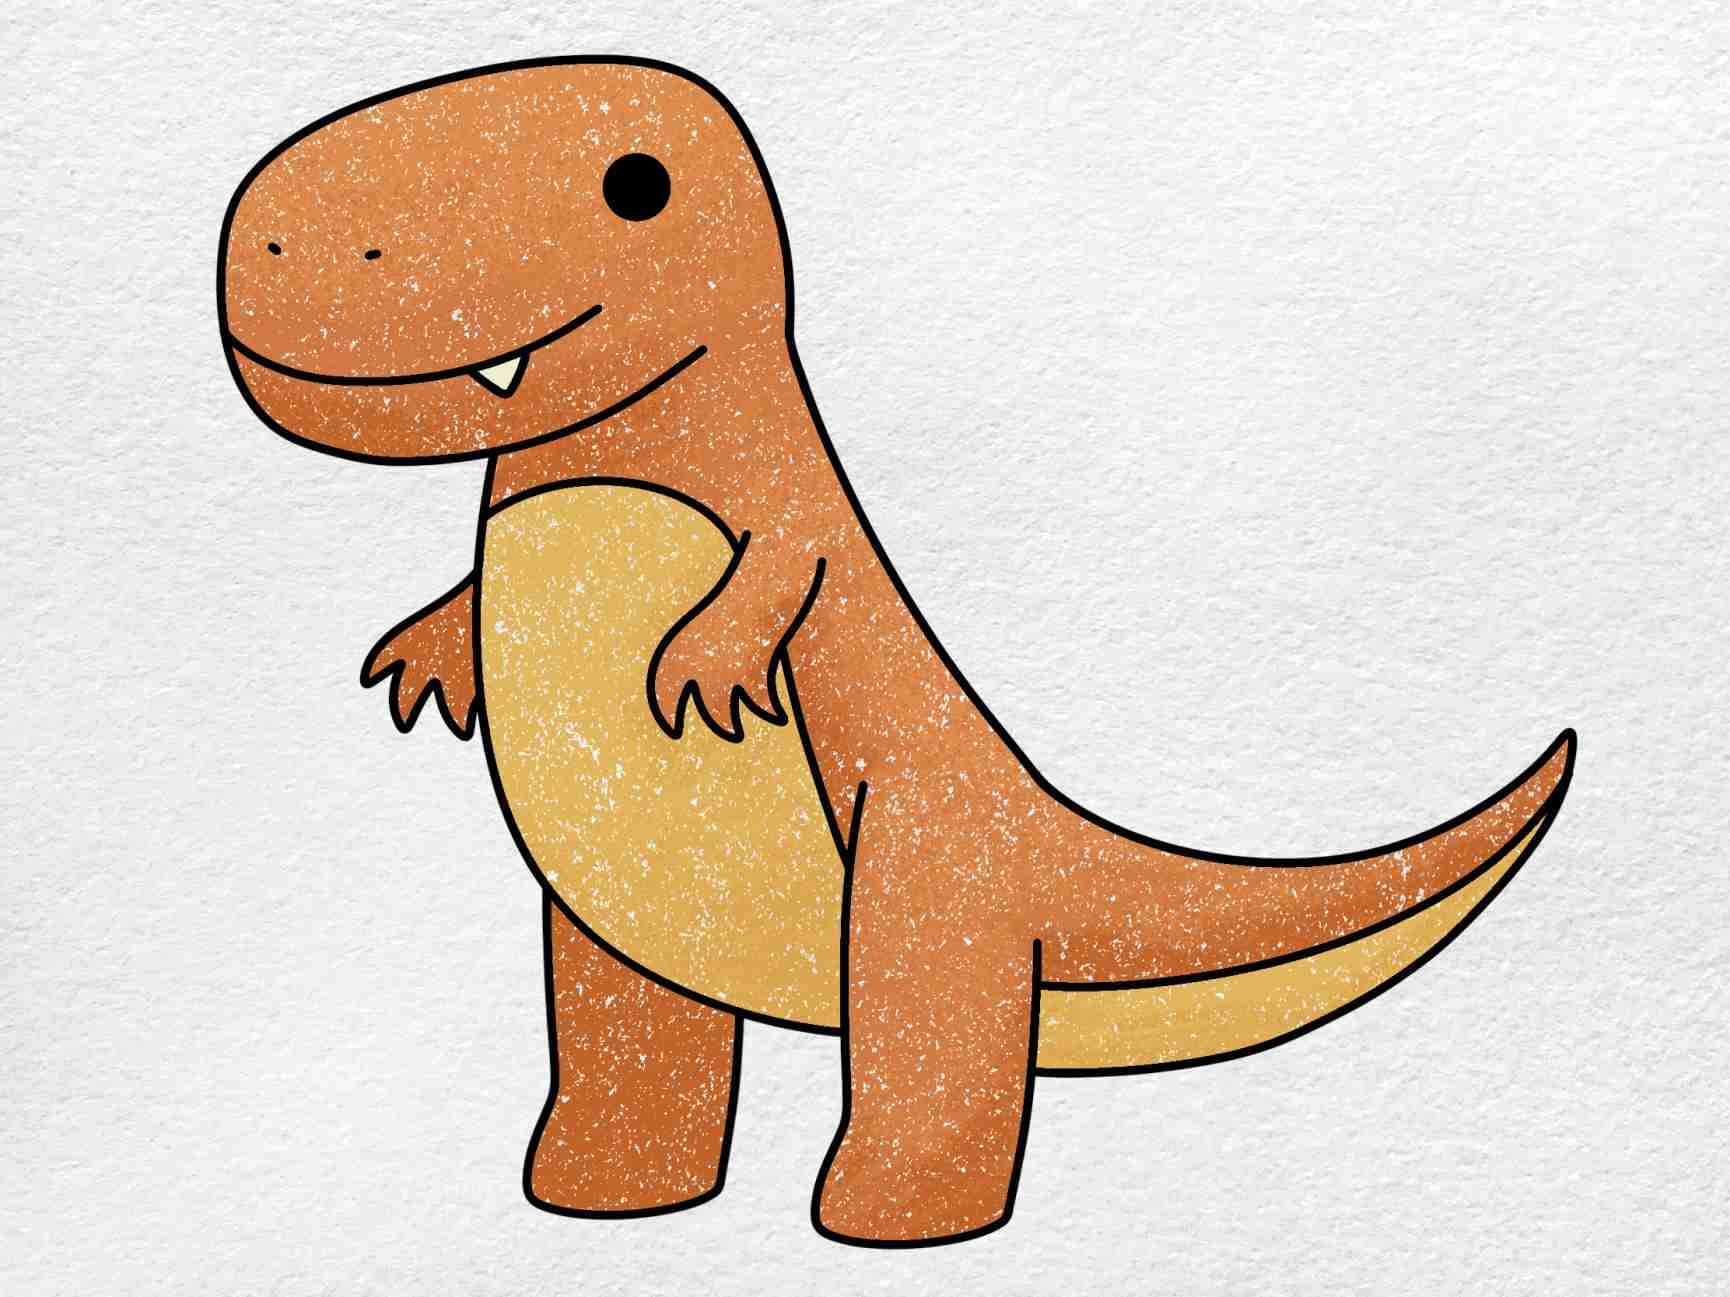 Enfascinerande Teckning Av En Tyrannosaurus Rex.